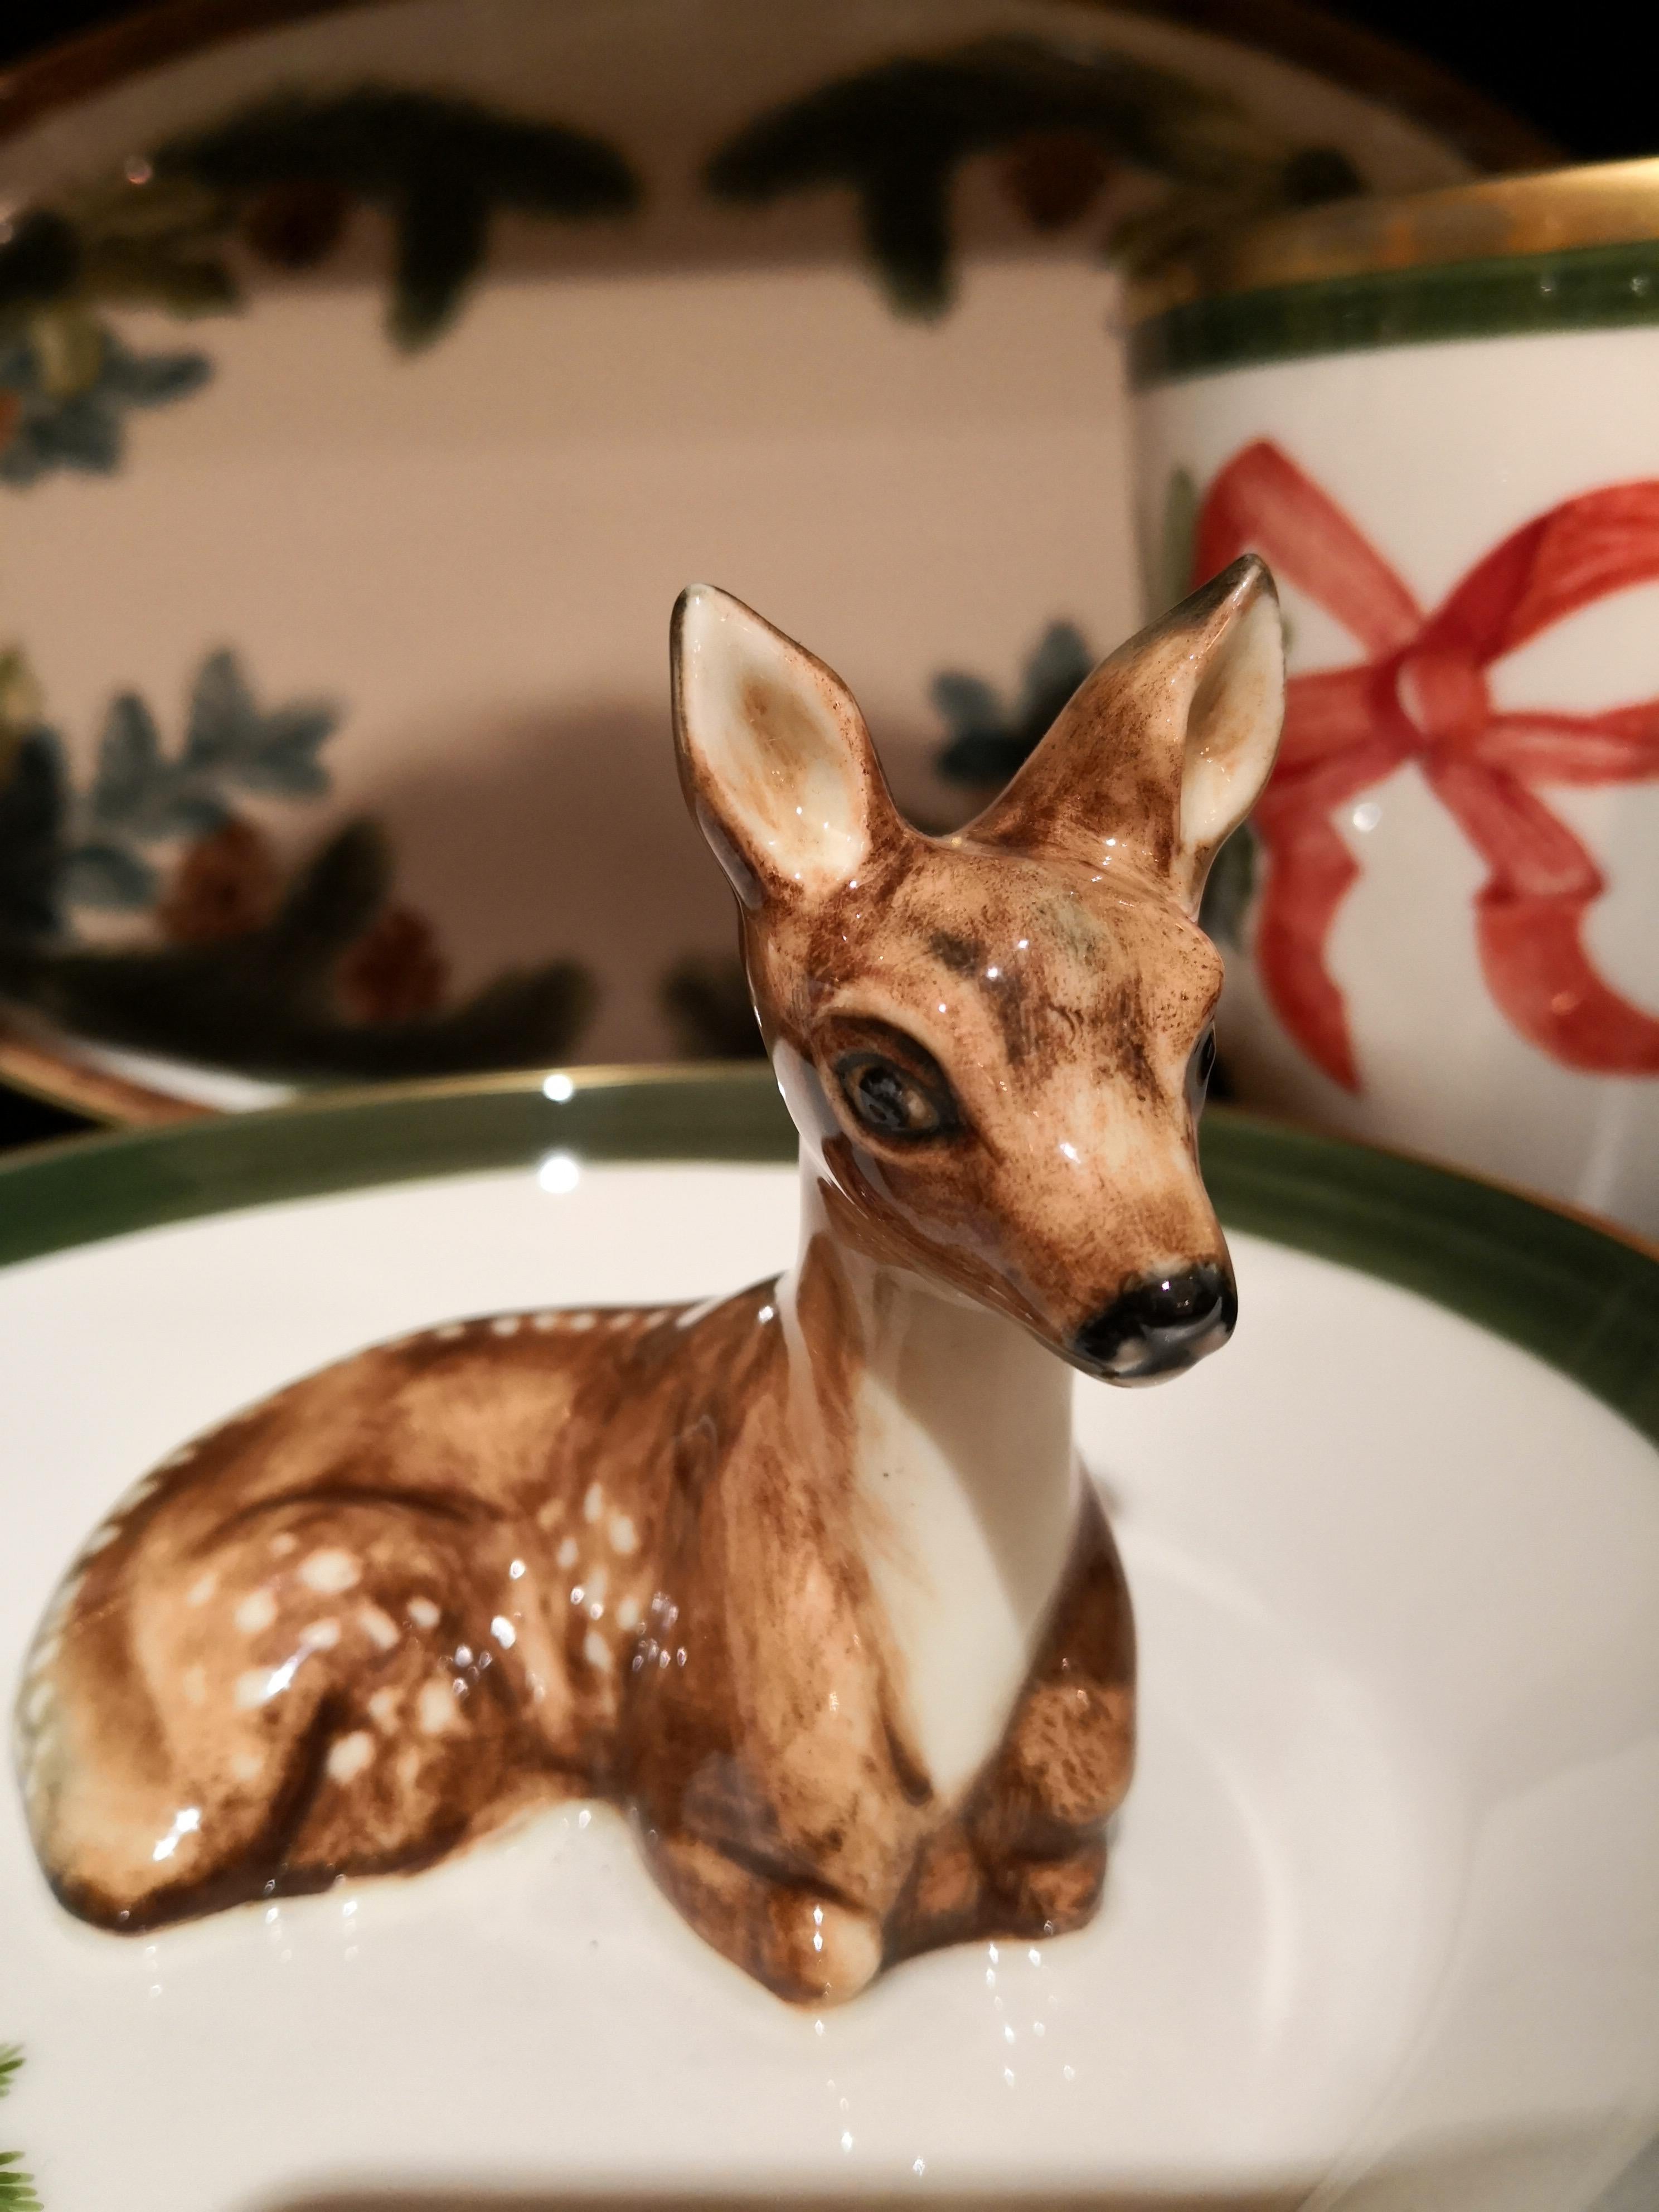 Vollständig handgefertigte Porzellanschale mit einer freihändig gemalten, naturalistischen Bambi-Figur in Braun. Das Bambi sitzt in der Mitte der Schale, um die man Nüsse oder Süßigkeiten dekorieren kann. Umrandet mit einer feinen 24-karätigen